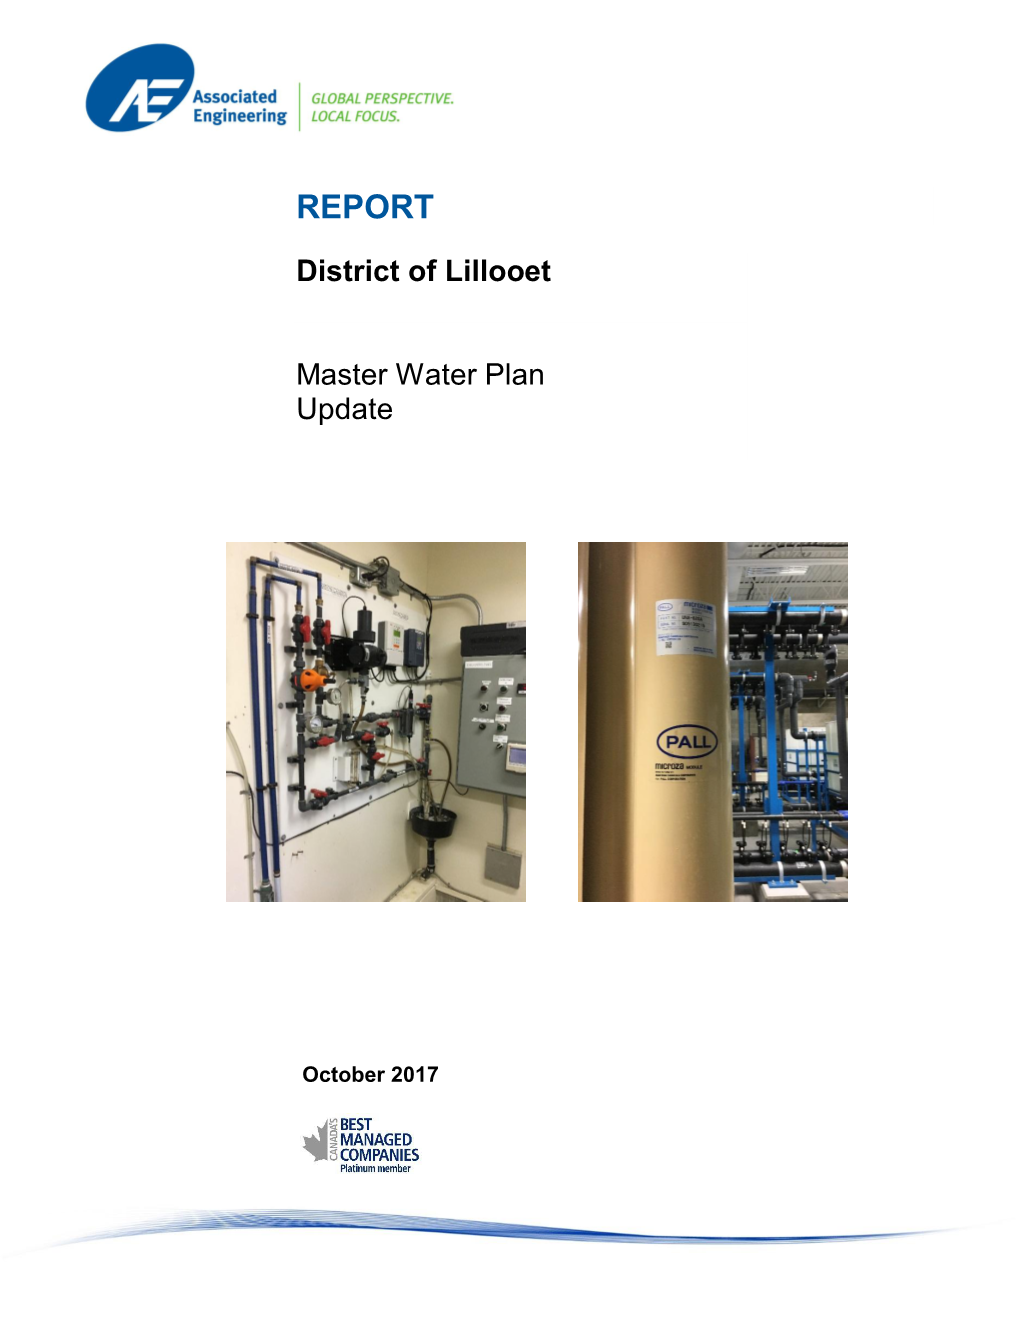 Master Water Plan-Oct 2017